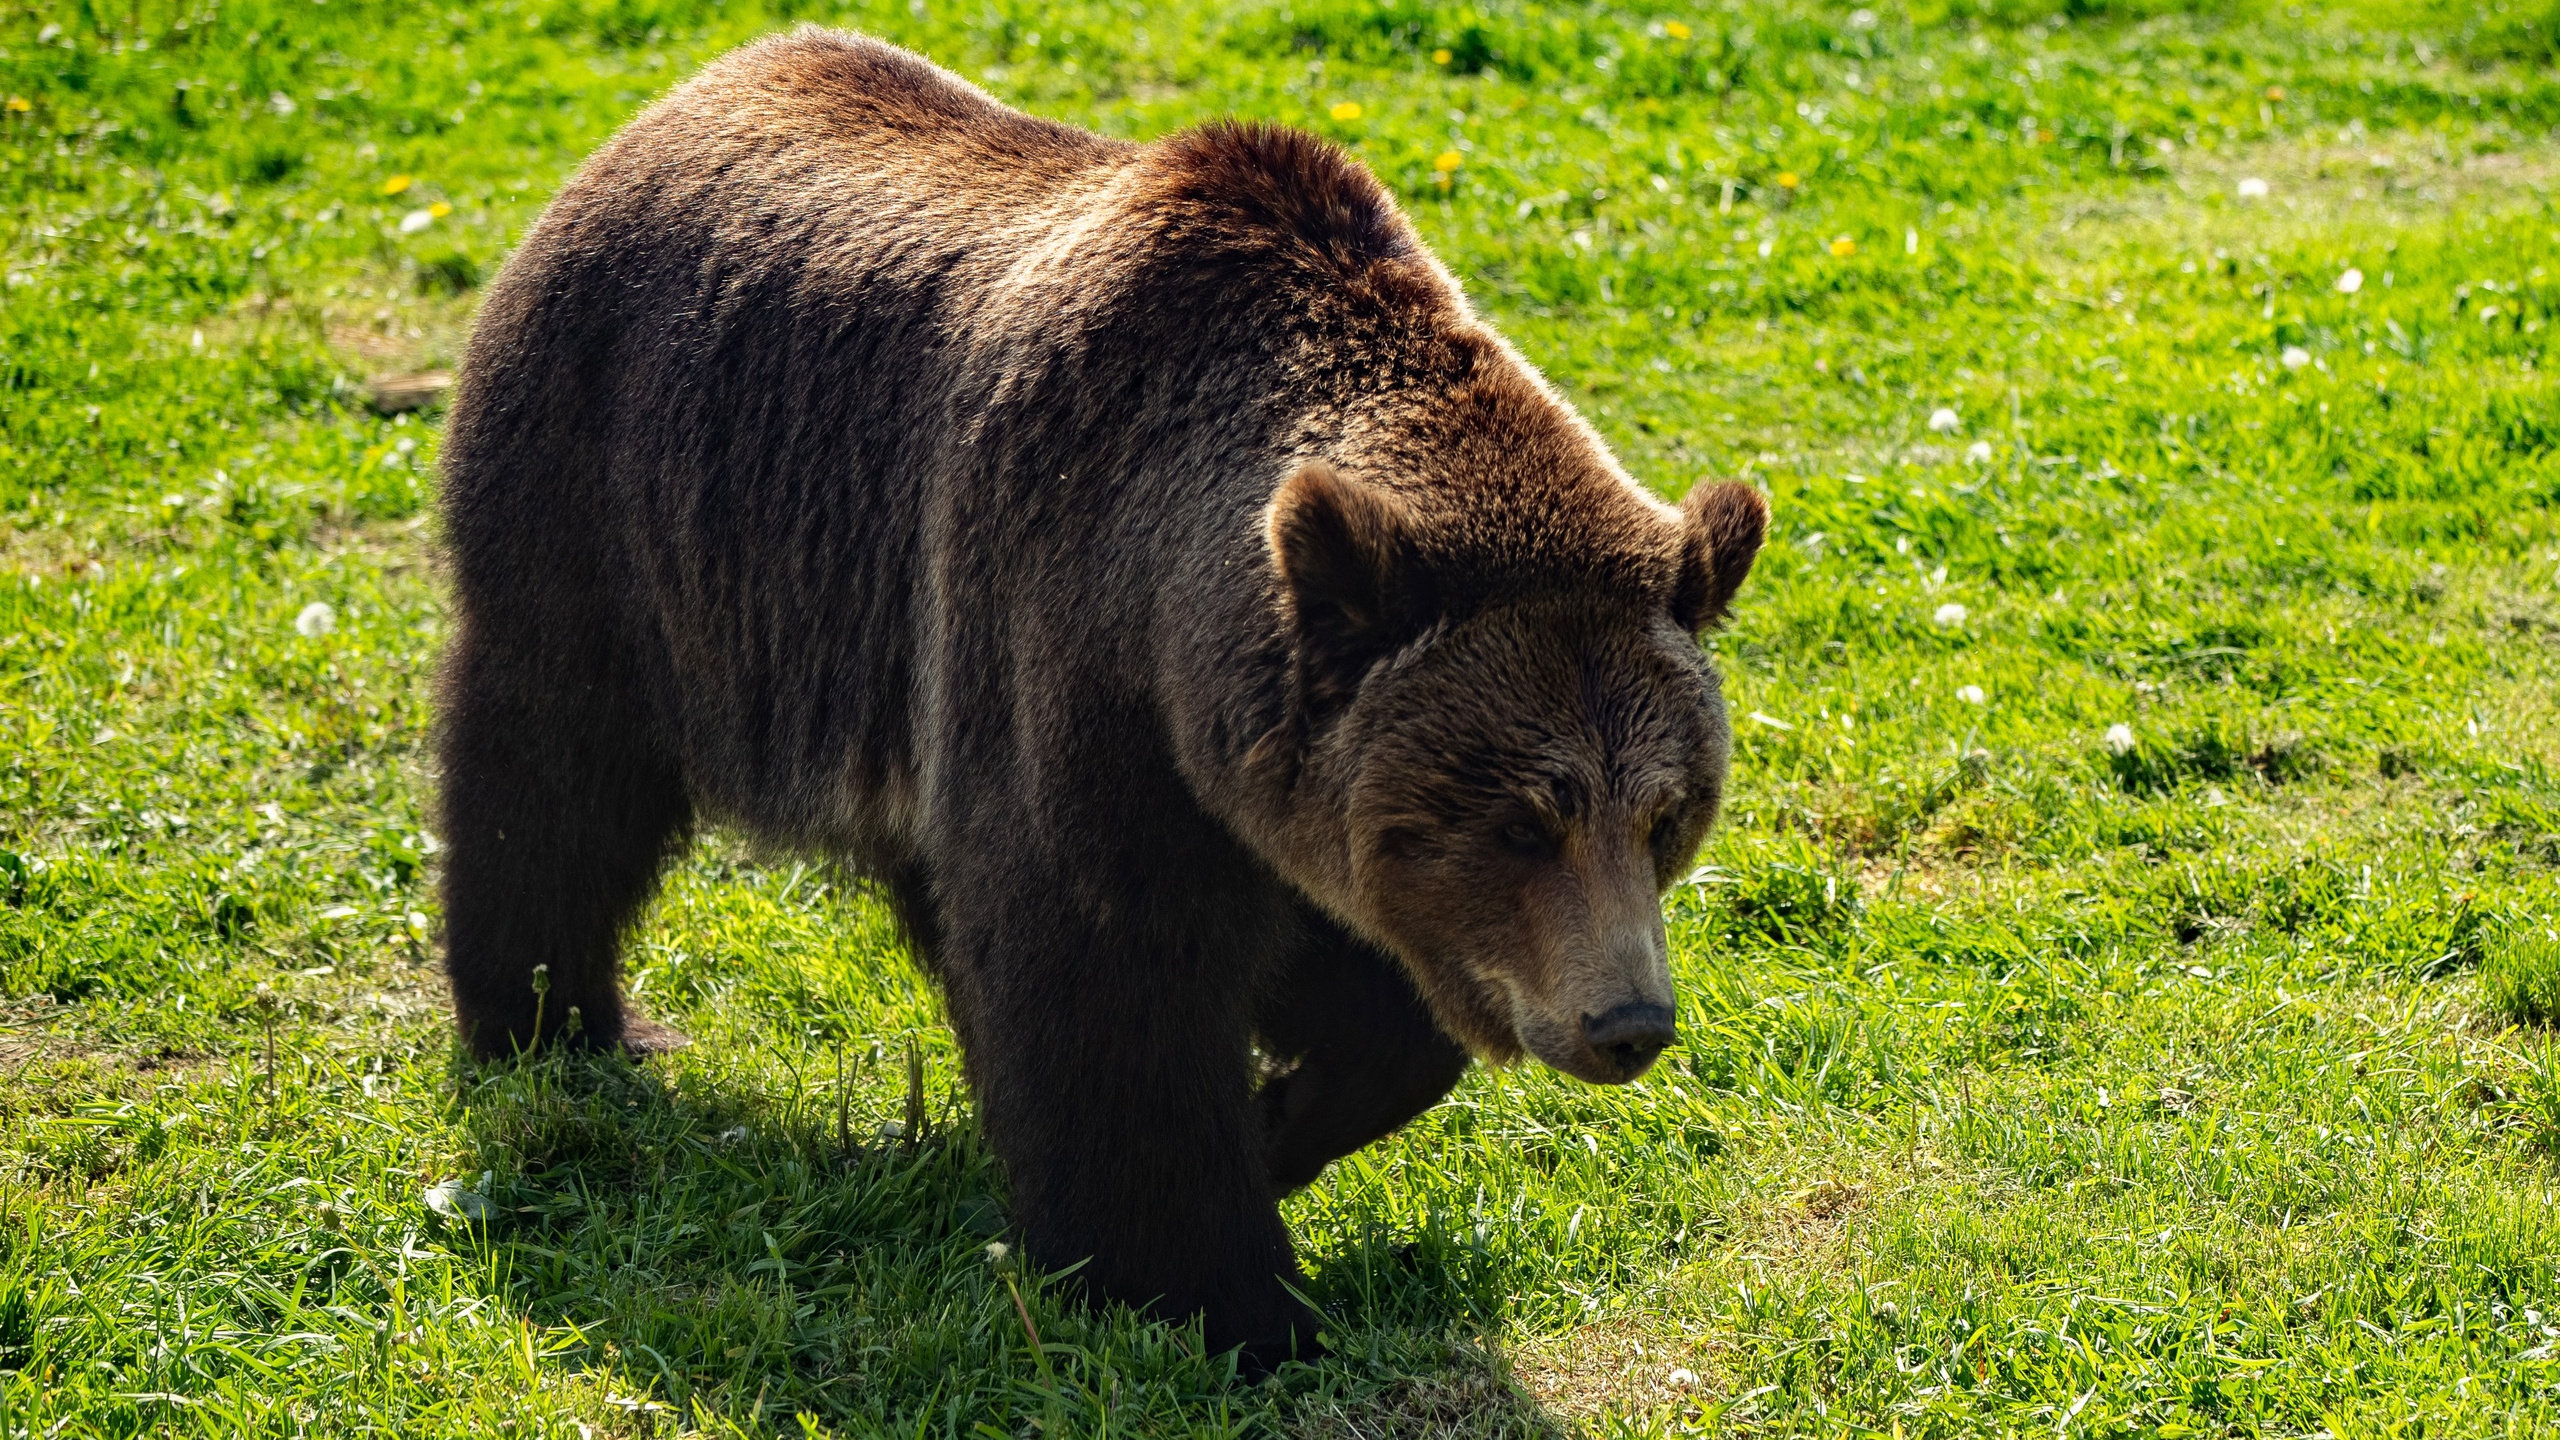 Свыше тысячи: в каких районах Ярославской области обитает больше всего медведей